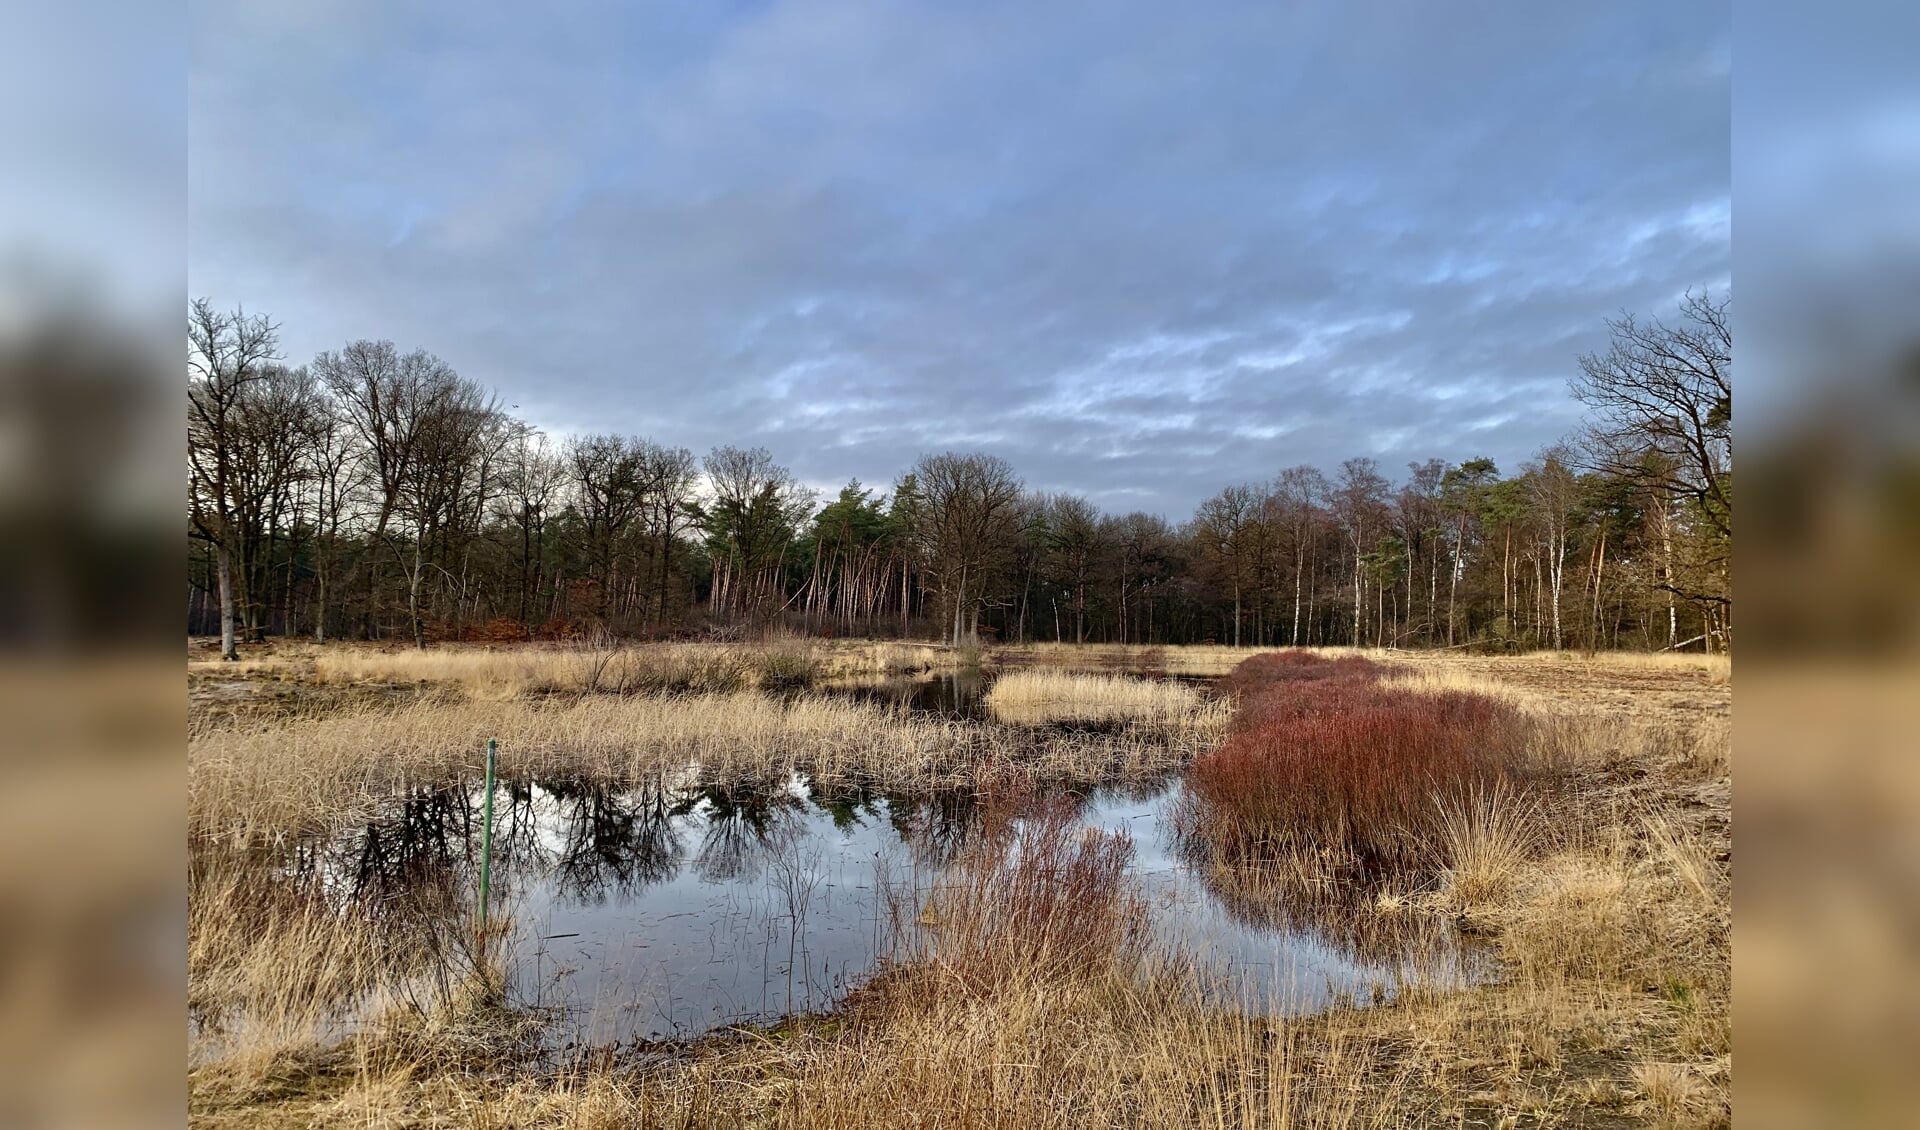 Foto: Stichting Marke Gorsselse Heide